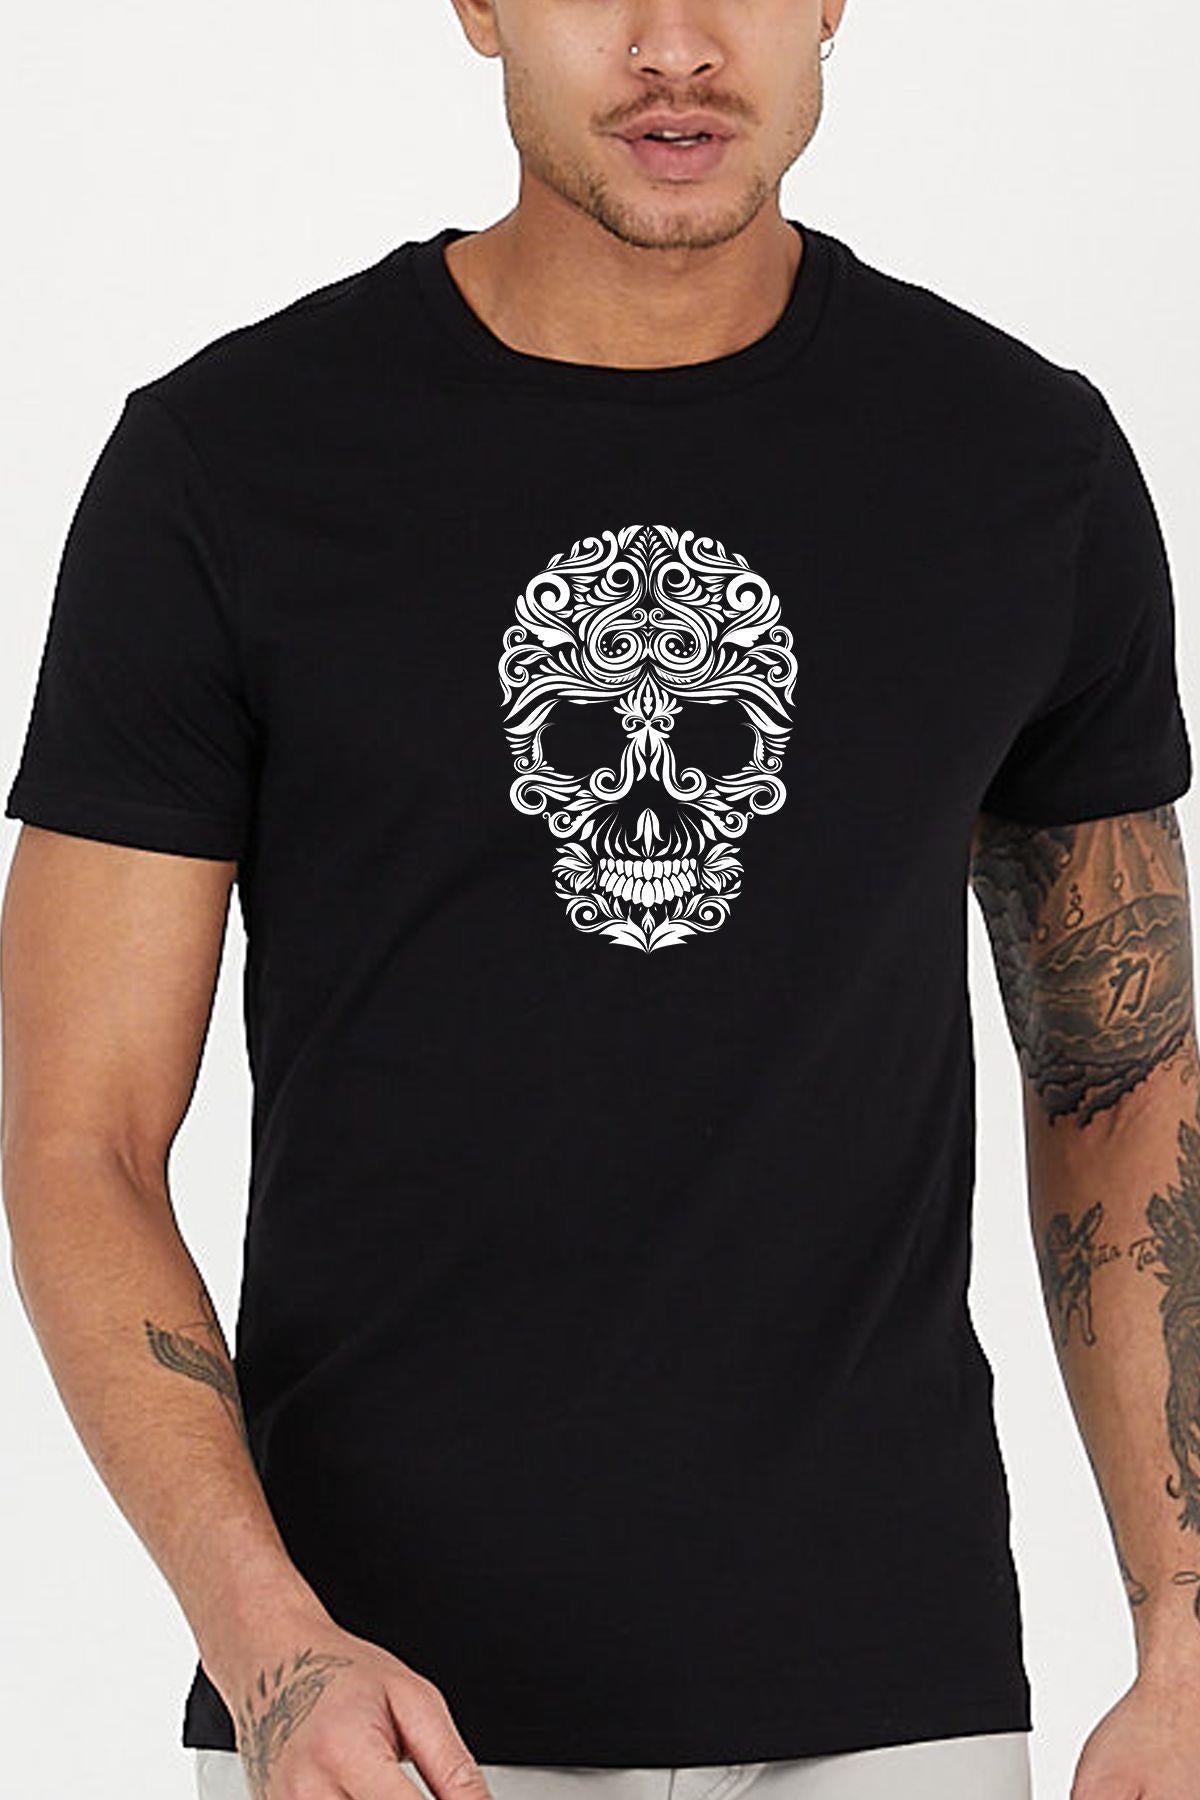 Floreral skeleton printed Crew Neck men's t -shirt